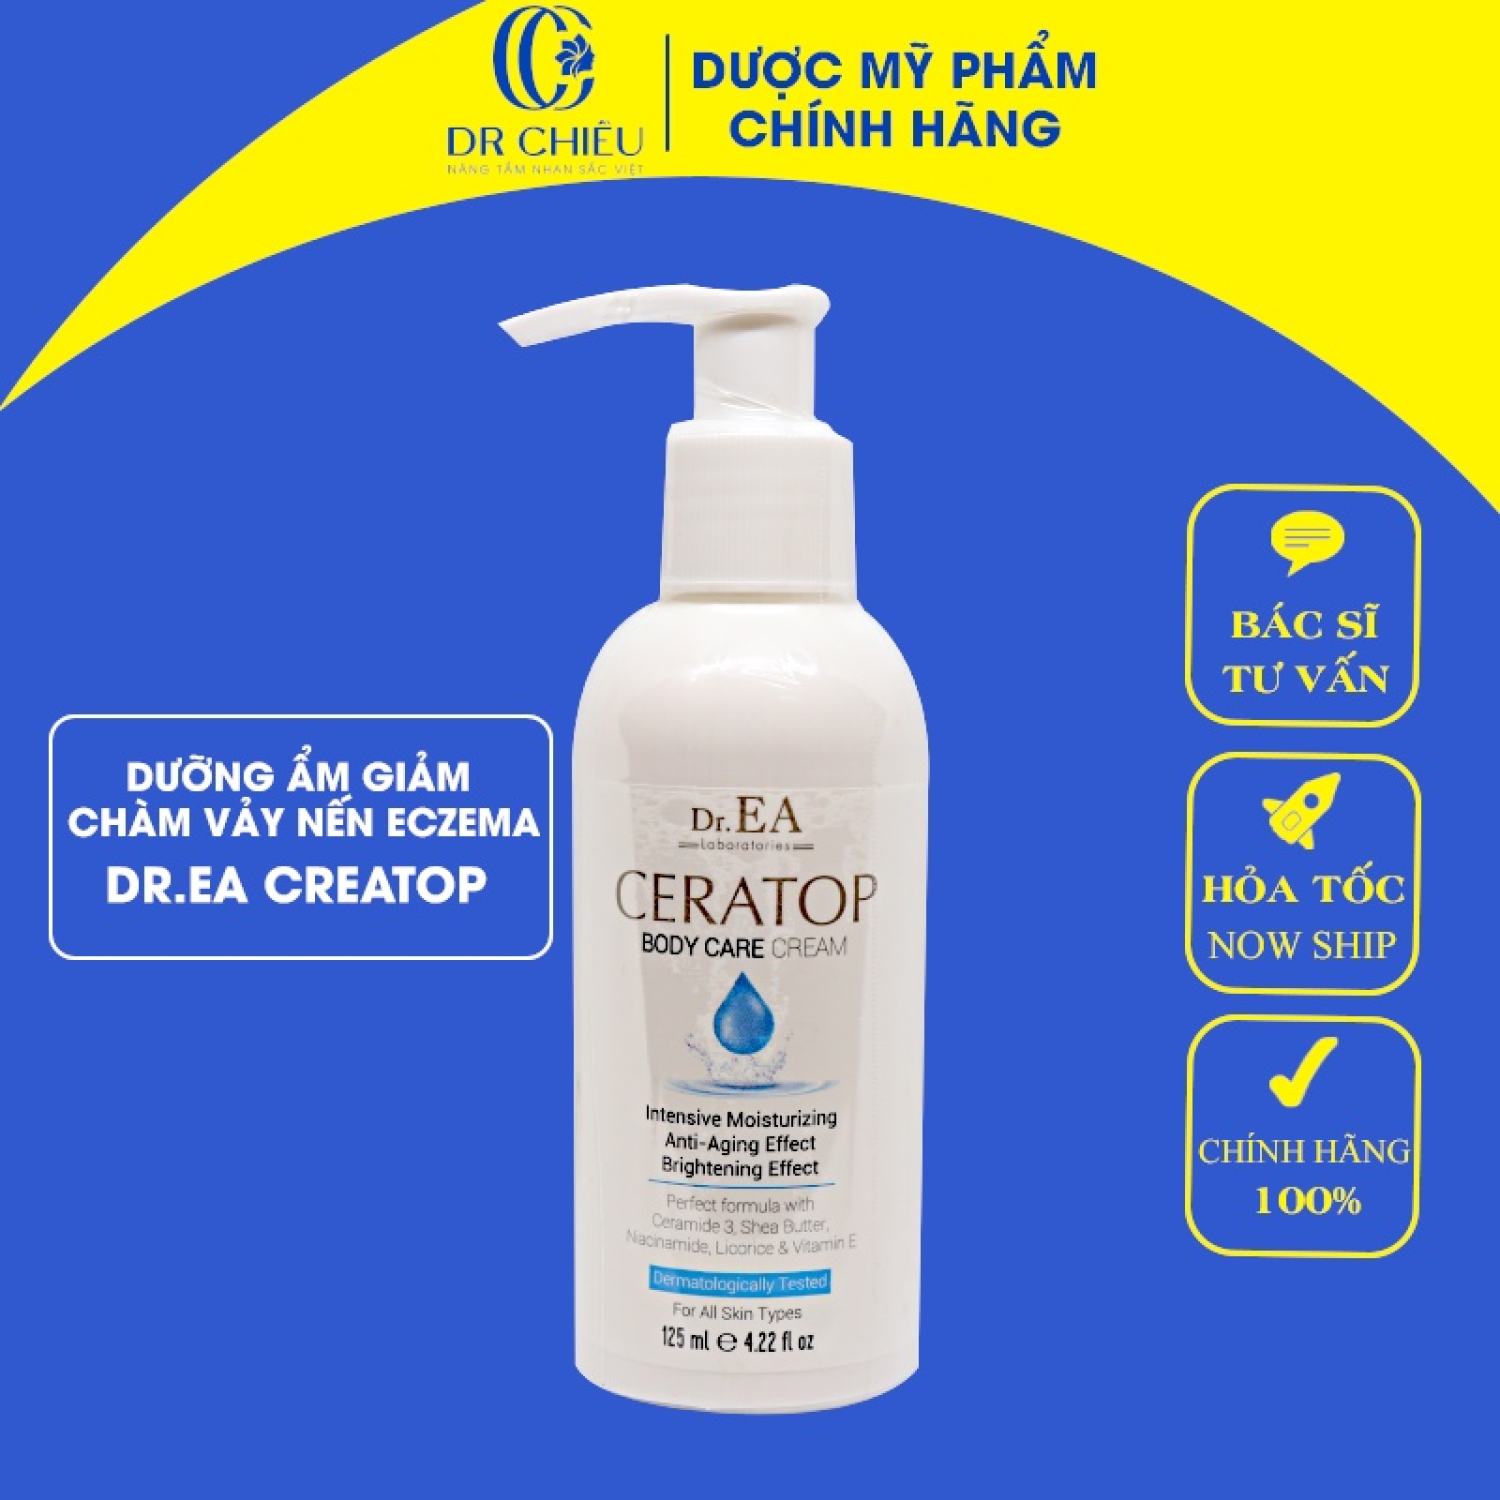 DR.EA CERATOP BODY CARE Cream - Kem Dưỡng Ẩm Sâu Giảm Chàm,Vảy Nến, Eczema Bảo Vệ Da Tự Nhiên 125ml